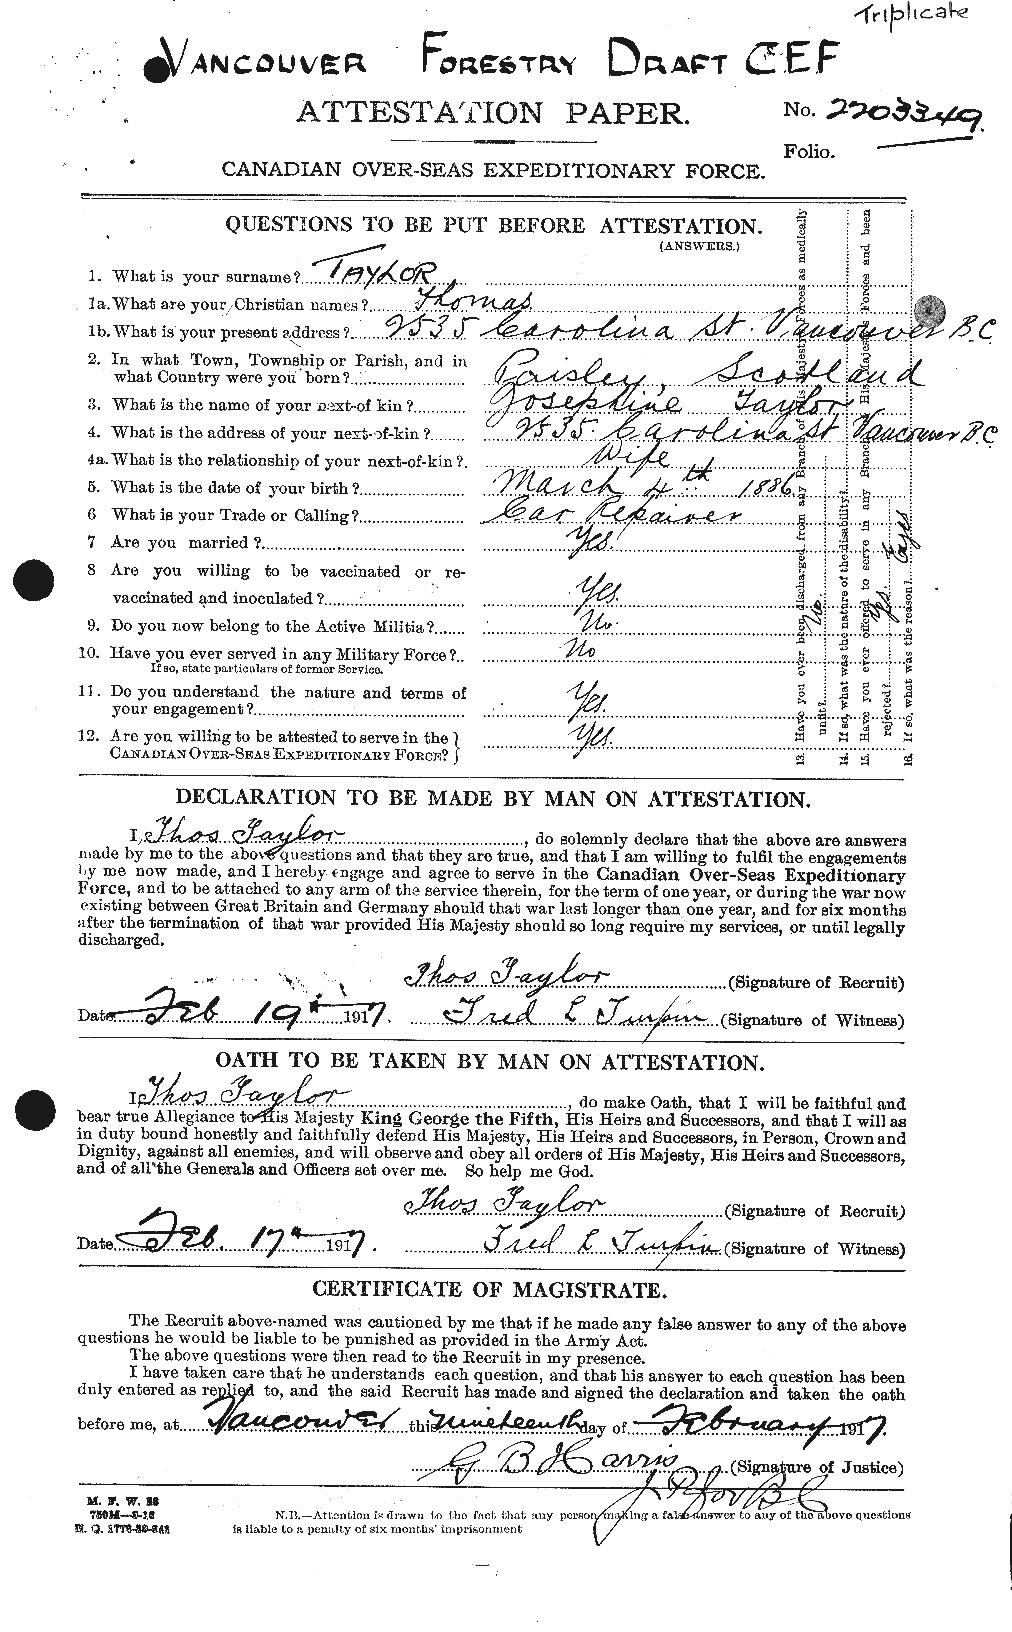 Dossiers du Personnel de la Première Guerre mondiale - CEC 627955a